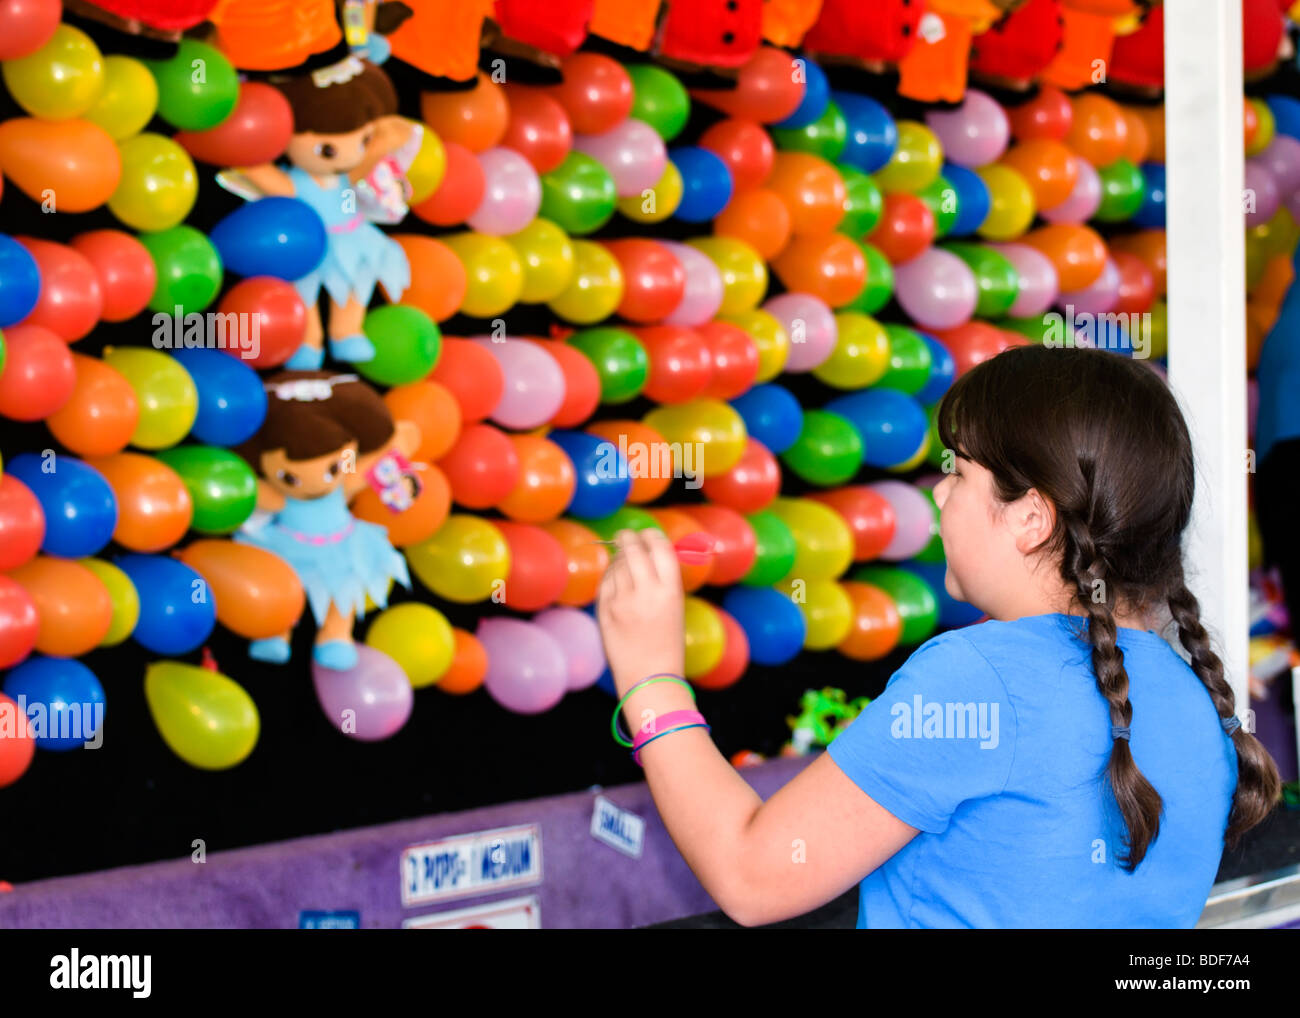 Una ragazza con trecce si prepara a lanciare un dardo in corrispondenza di una parete di palloncini alla fiera della contea. Foto Stock